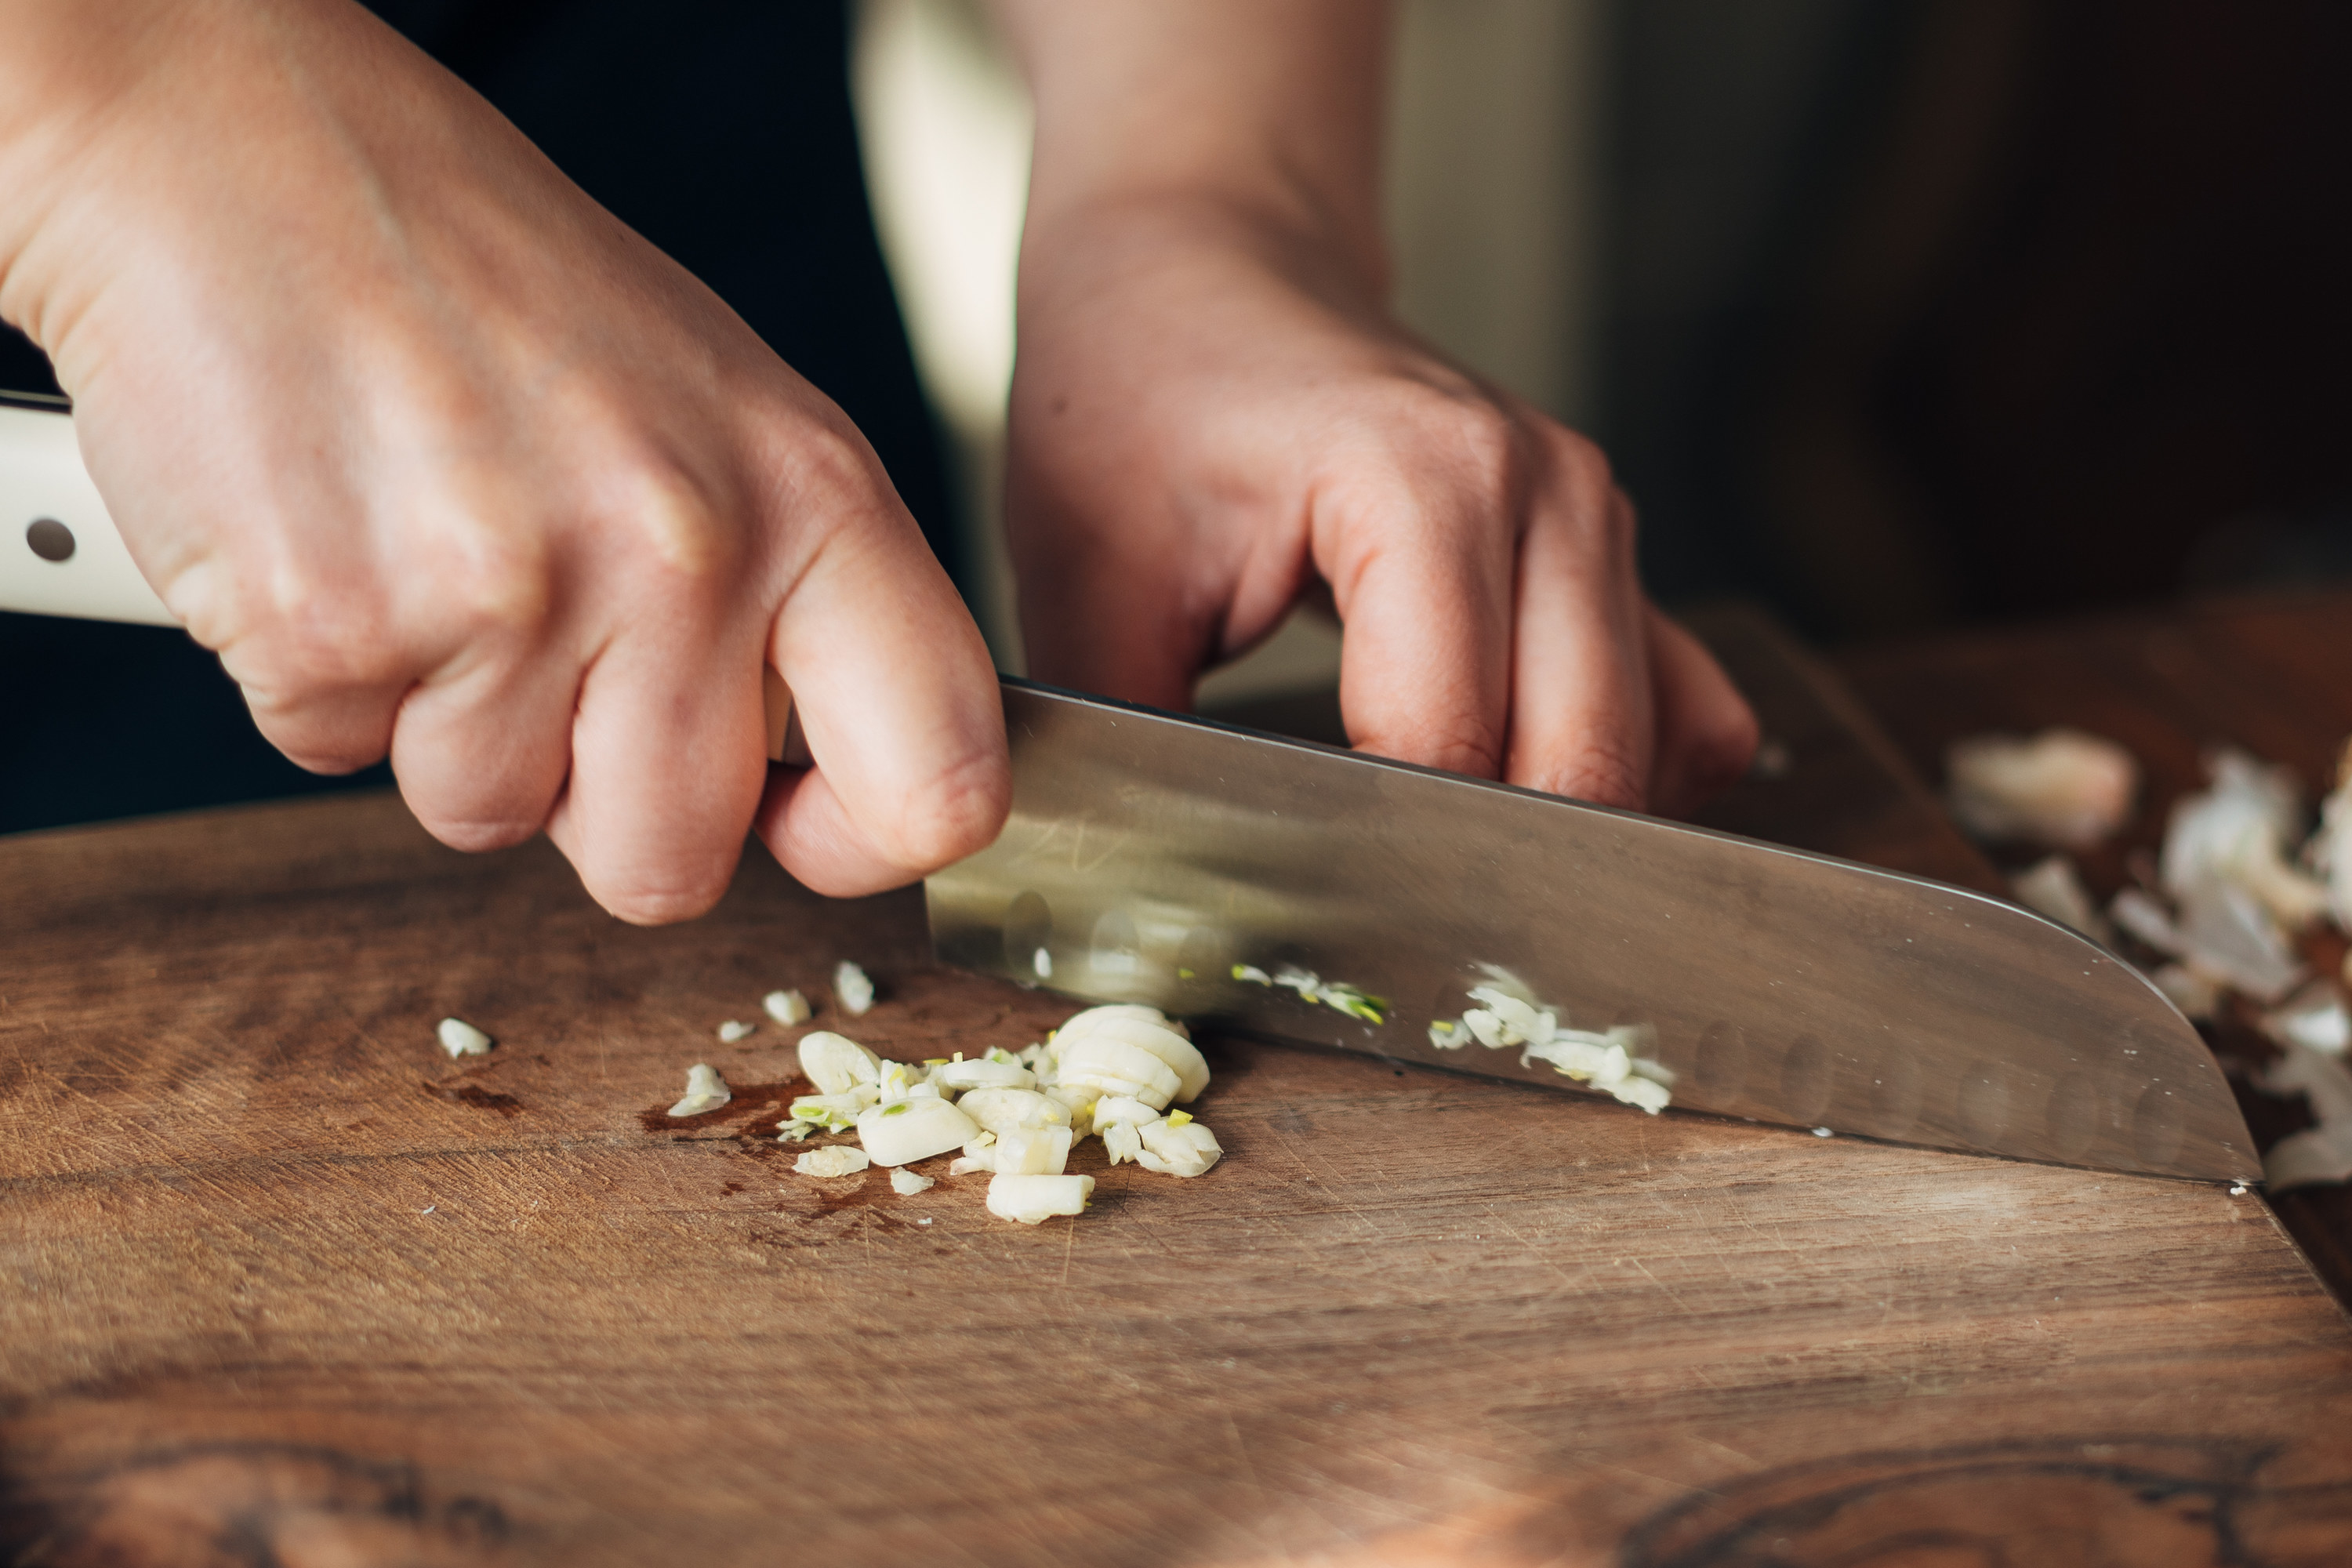 Chopping garlic on a wooden cutting board